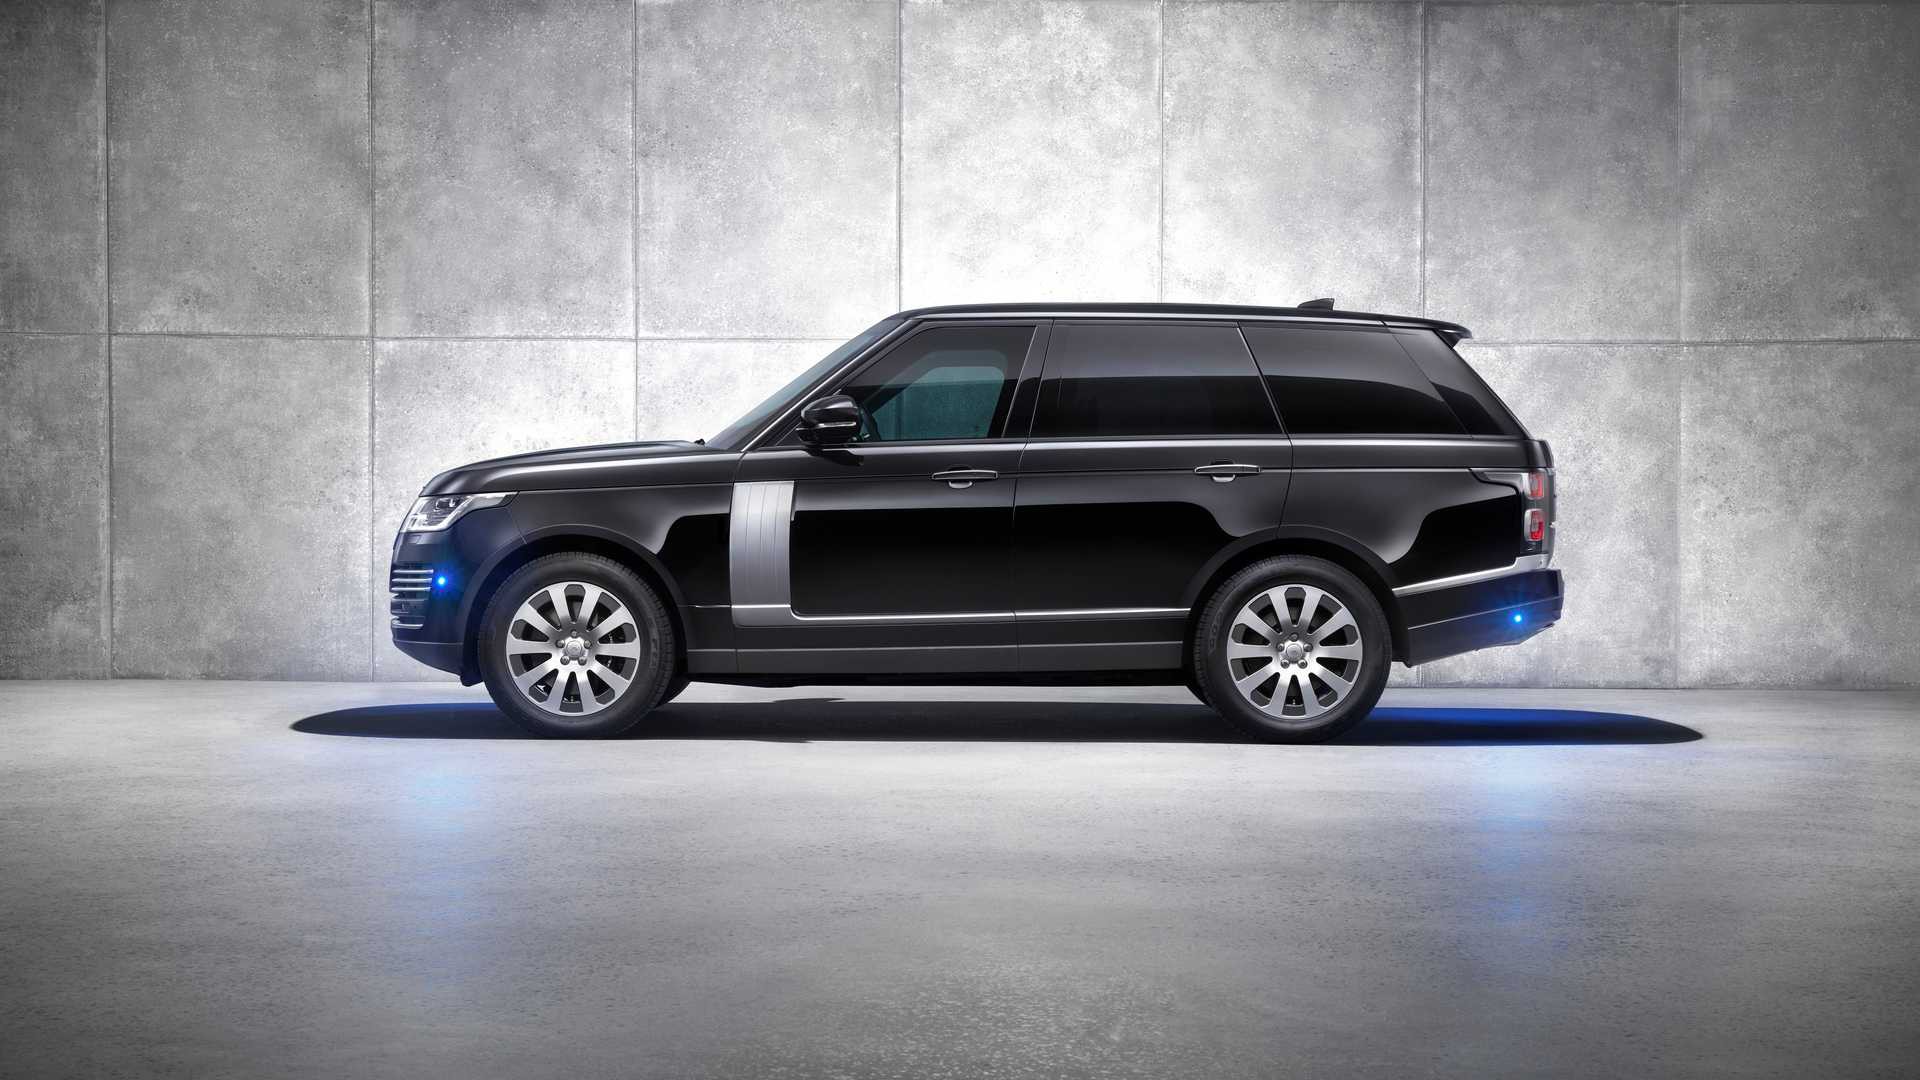 SUV hạng sang Range Rover thế hệ mới sẽ có nhiều thay đổi